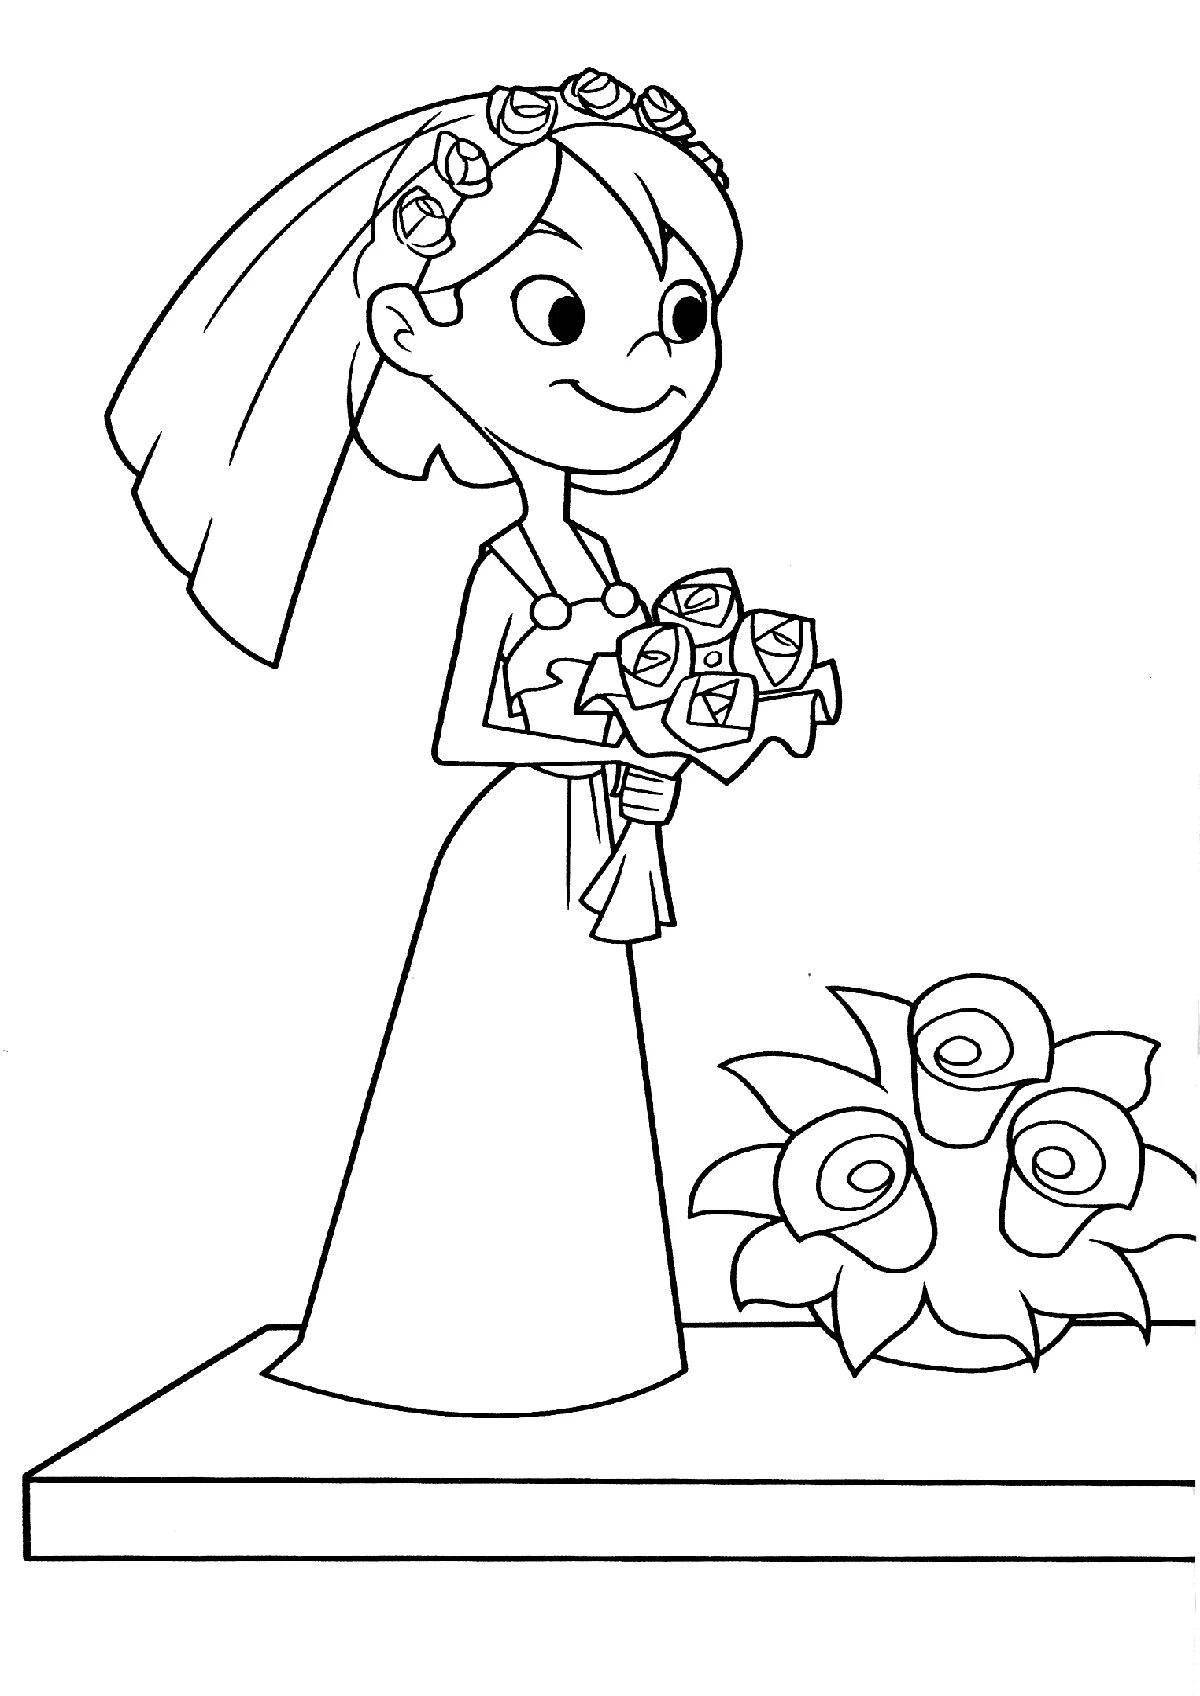 Bride coloring page